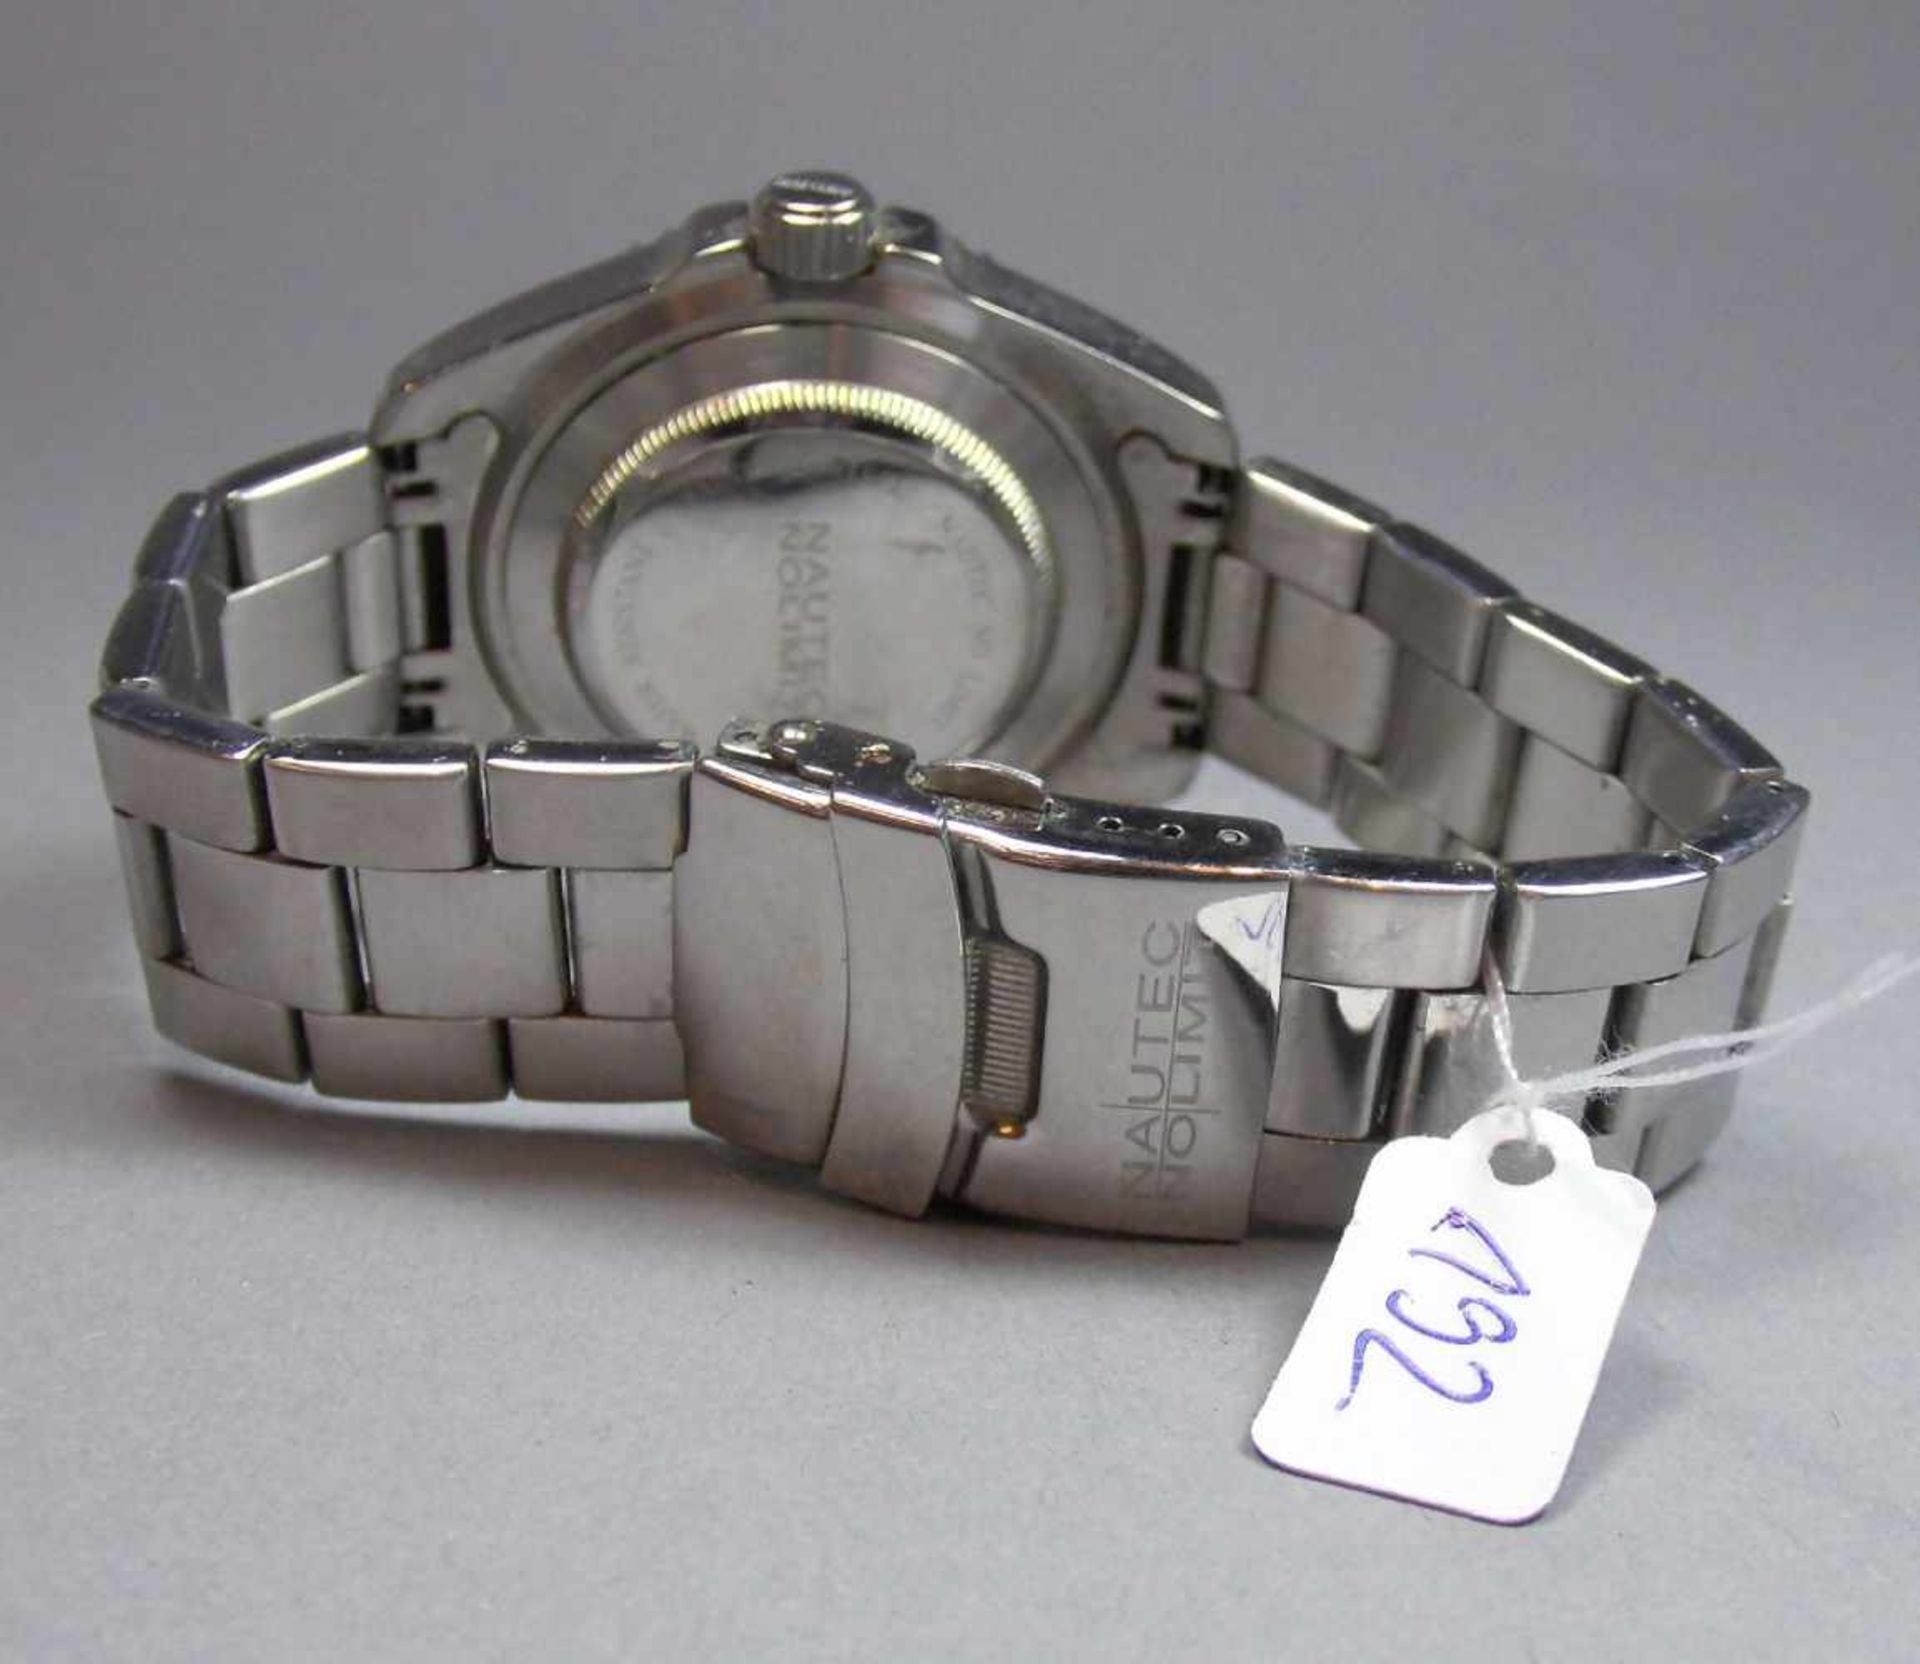 ARMBANDUHR : NAUTEK NO LIMIT GMT / wristwatch, Automatik-Uhr. Rundes Stahlgehäuse mit Gliederarmband - Bild 7 aus 7